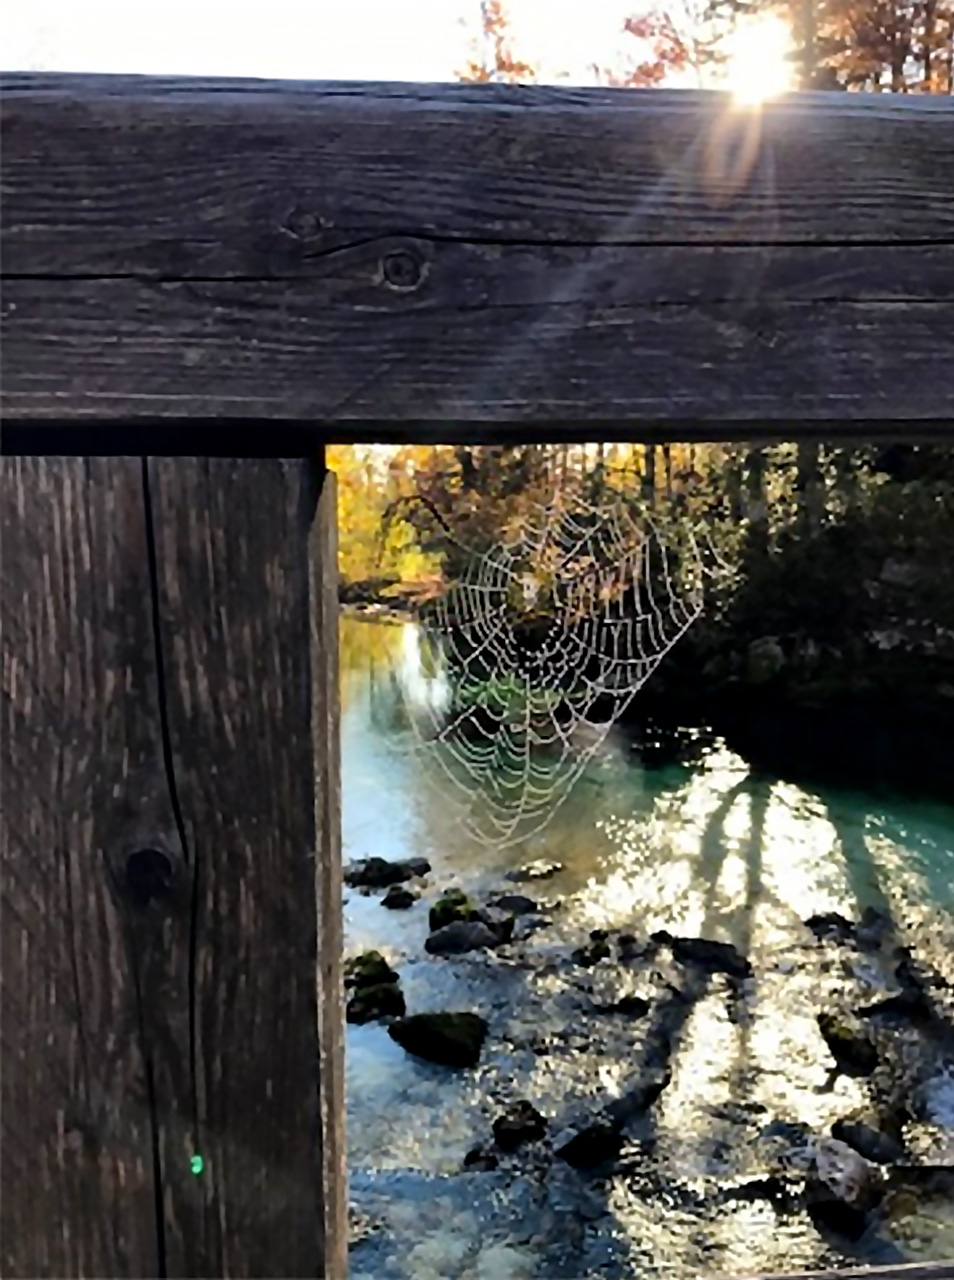 U prvom planu je ograda drvenog mosta u kutu koje je ispletena paukova mreža. U drugom planu su rijeka i šuma dok se kroz krošnje drveća nazire sunce. 